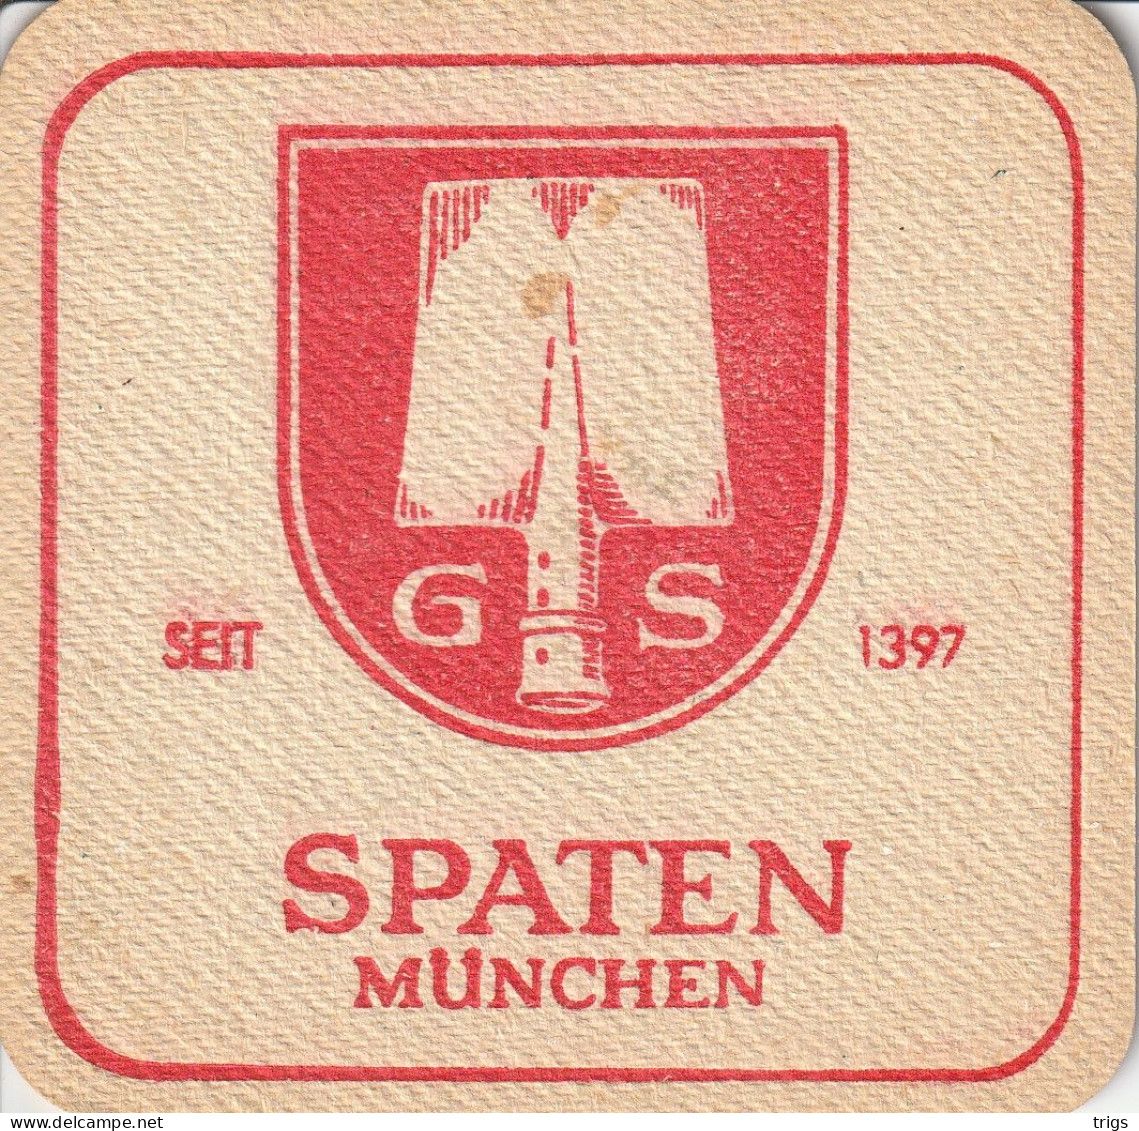 Spaten München - Beer Mats